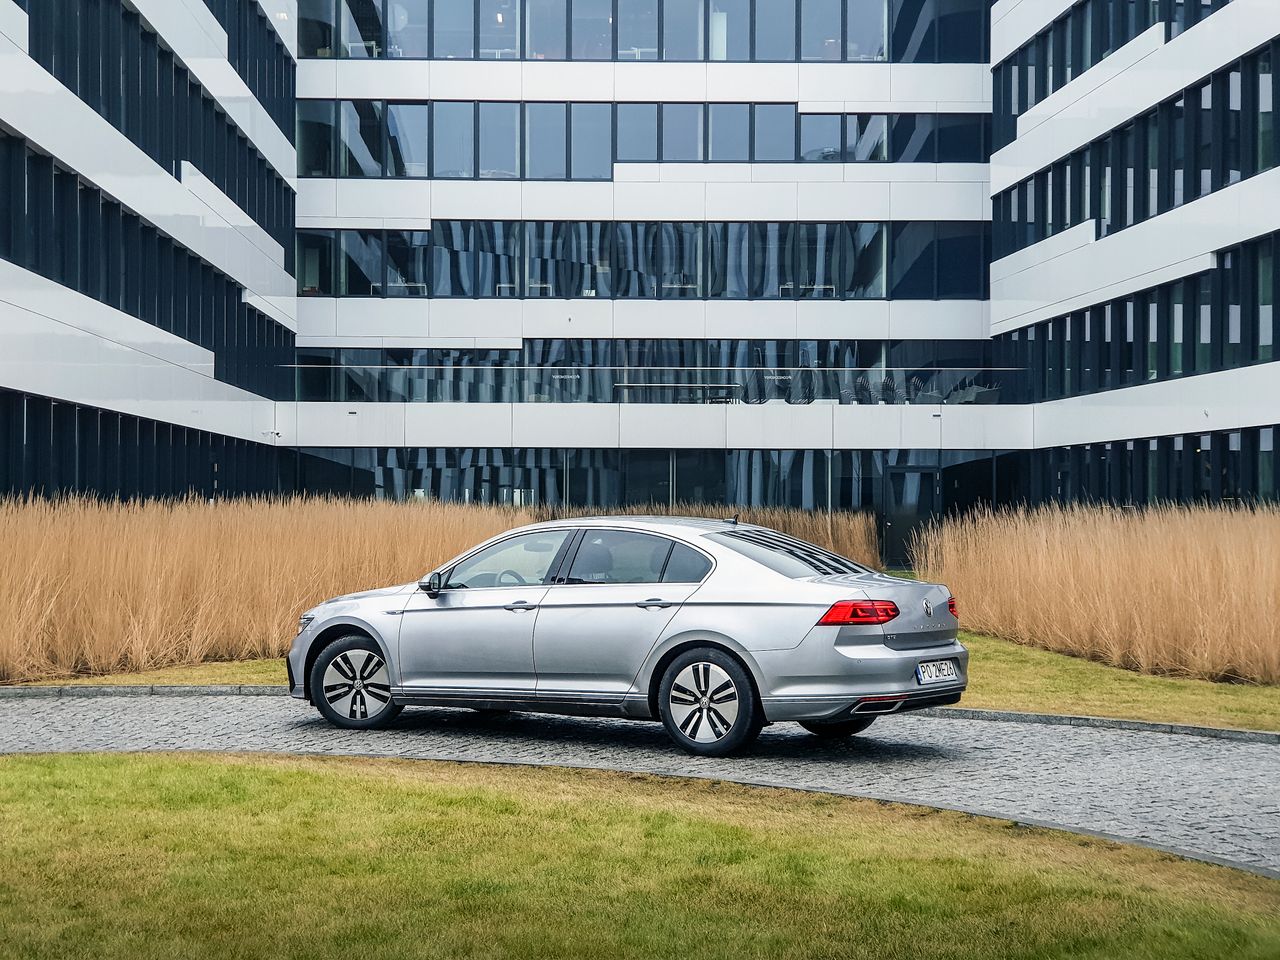 VW Passat GTE w długim dystansie: sprawdzamy zasięg i spalanie w mieście